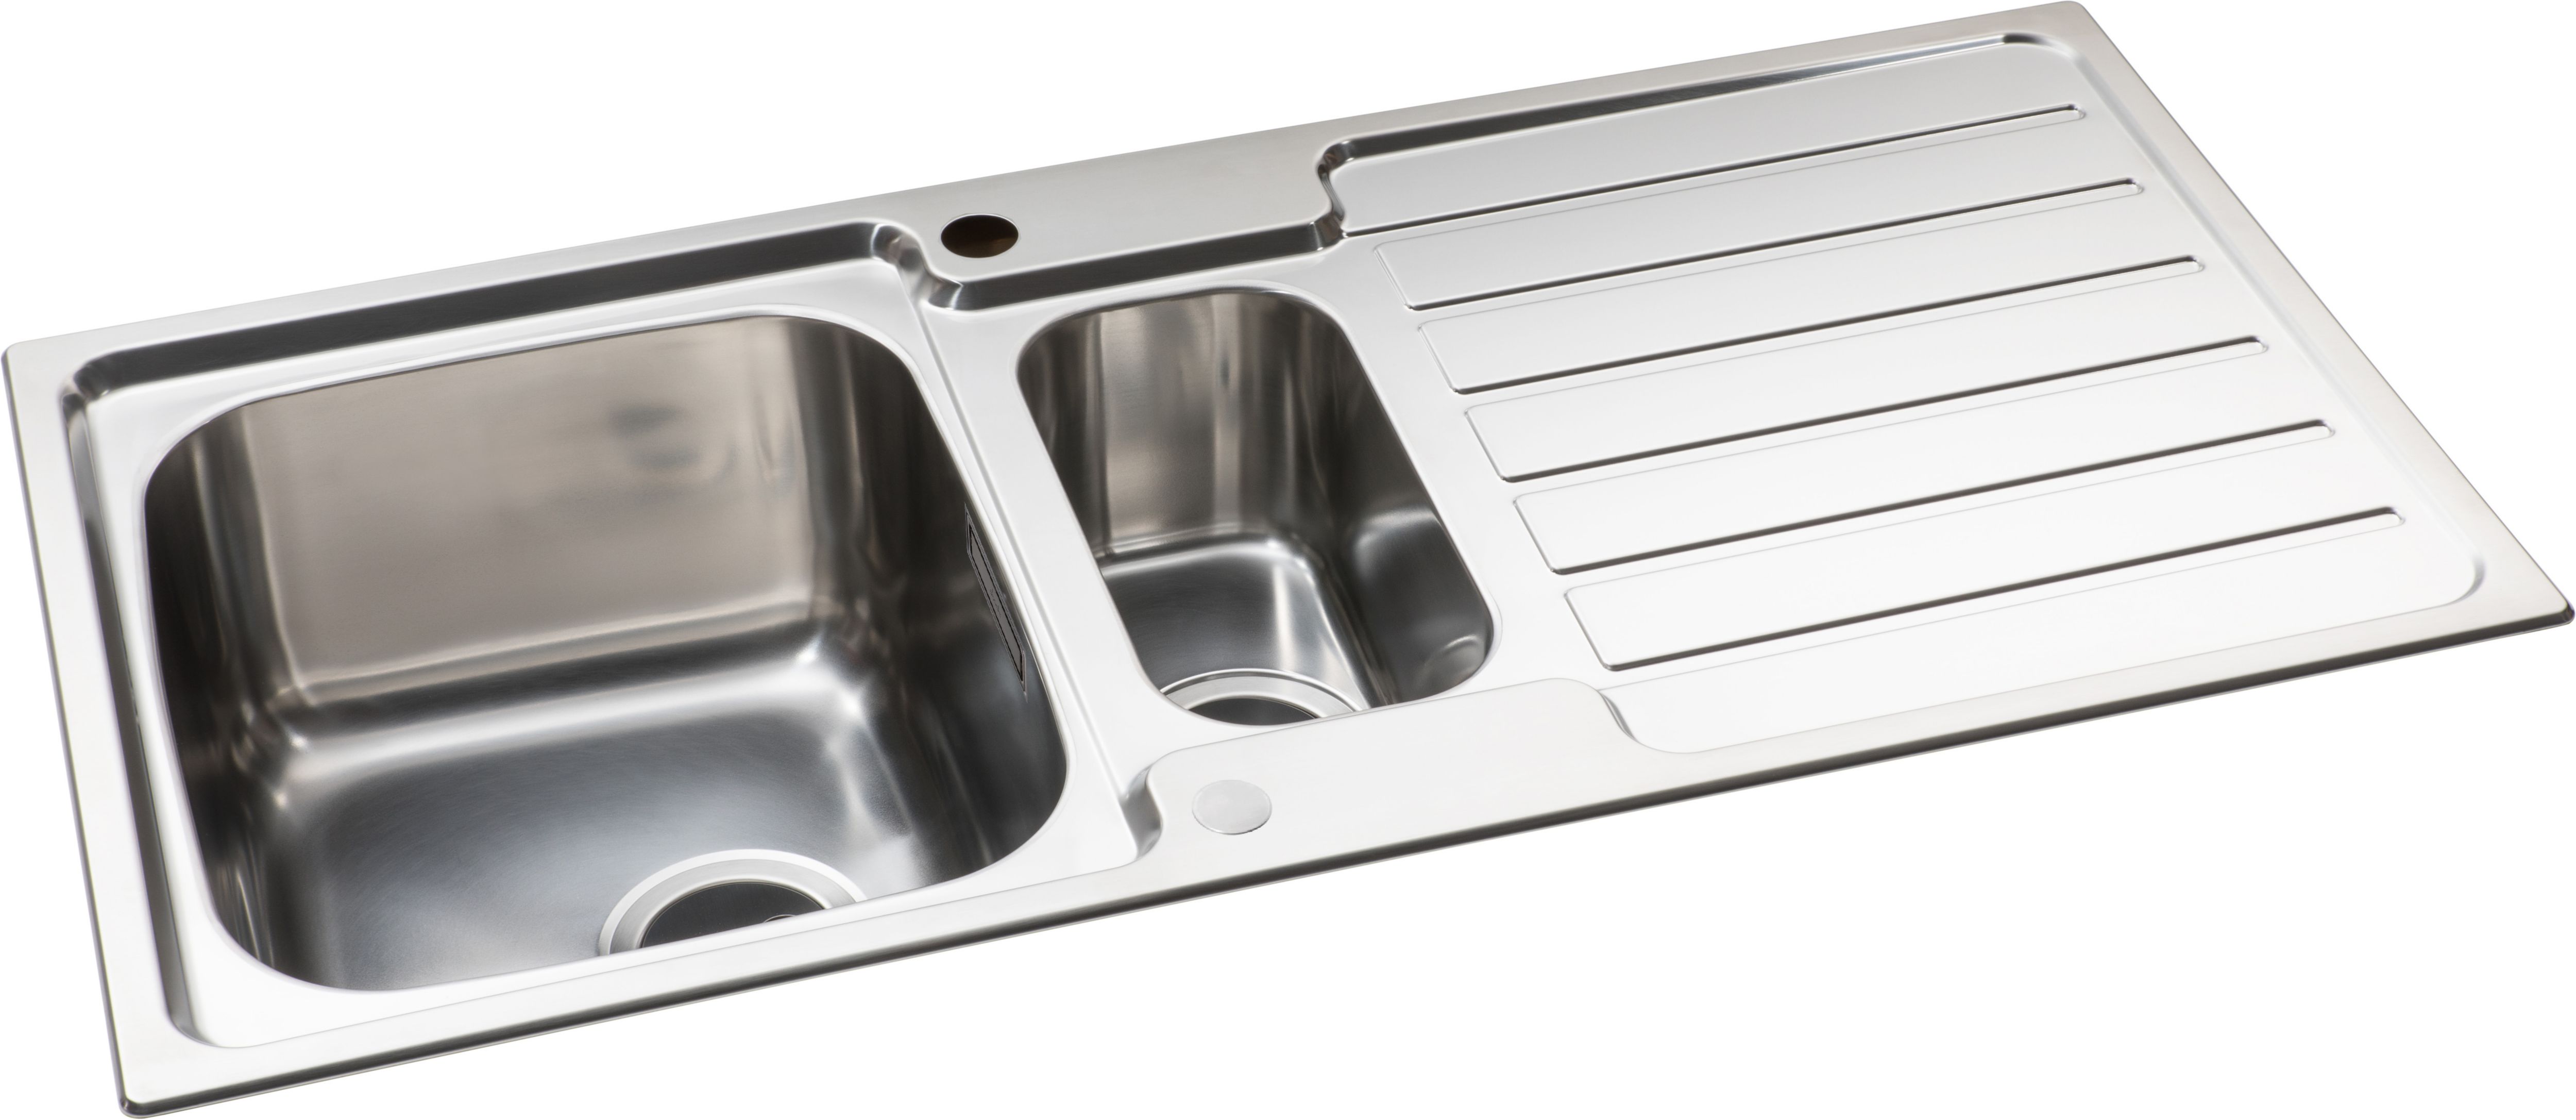 Neron 1.5 Bowl Kitchen Sink - Stainless Steel